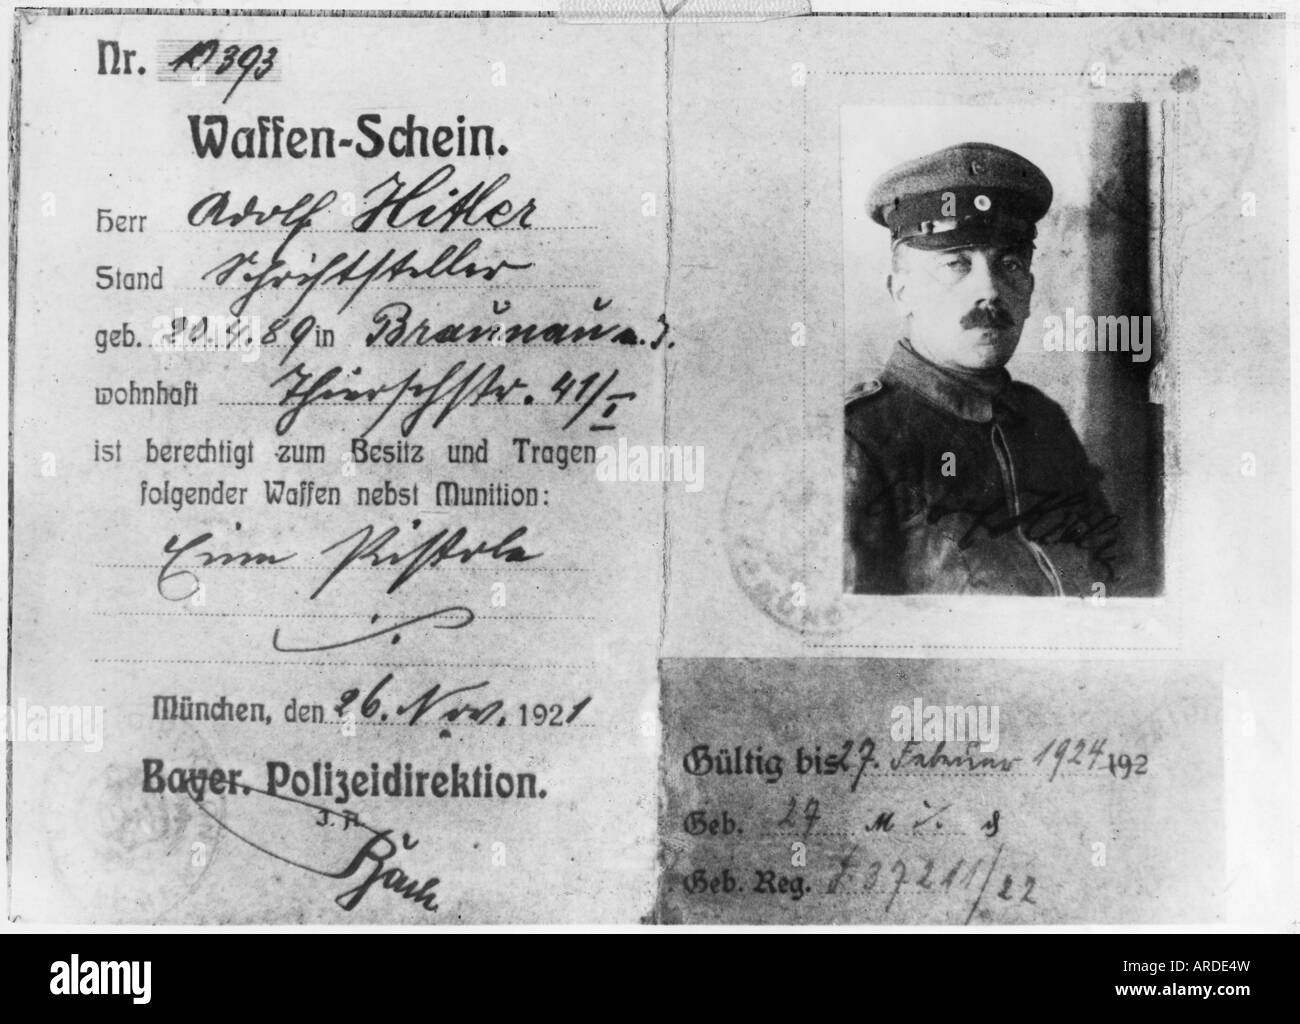 Hitler, Adolf, 20.4.1889 - 30.4.1945, German politician (NSDAP), fire arm certificate, Munich, 26.11.1921, , Stock Photo